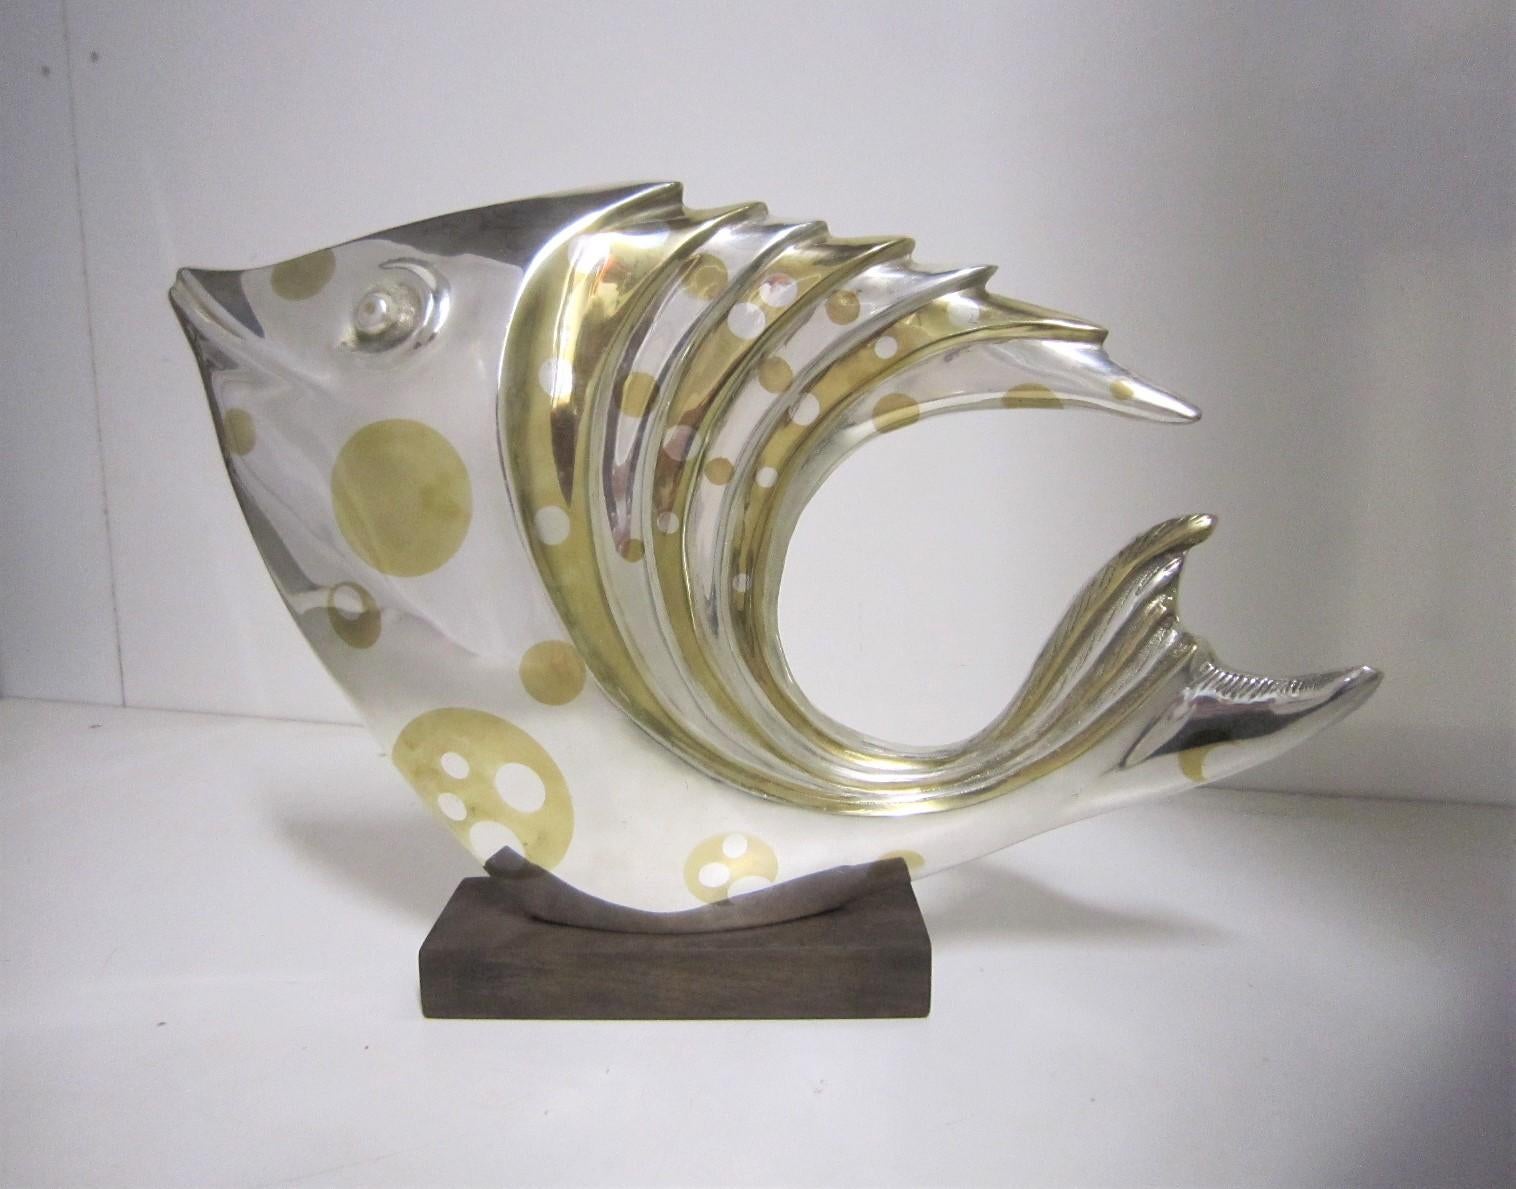 Un grand et impressionnant poisson en argent et bronze doré à la feuille attribué à Marie Louise Simard.
Cette élégante sculpture d'art d'un poisson exotique stylisé, semblable à un discus, un poisson lune ou un poisson épineux argenté, flotte sans